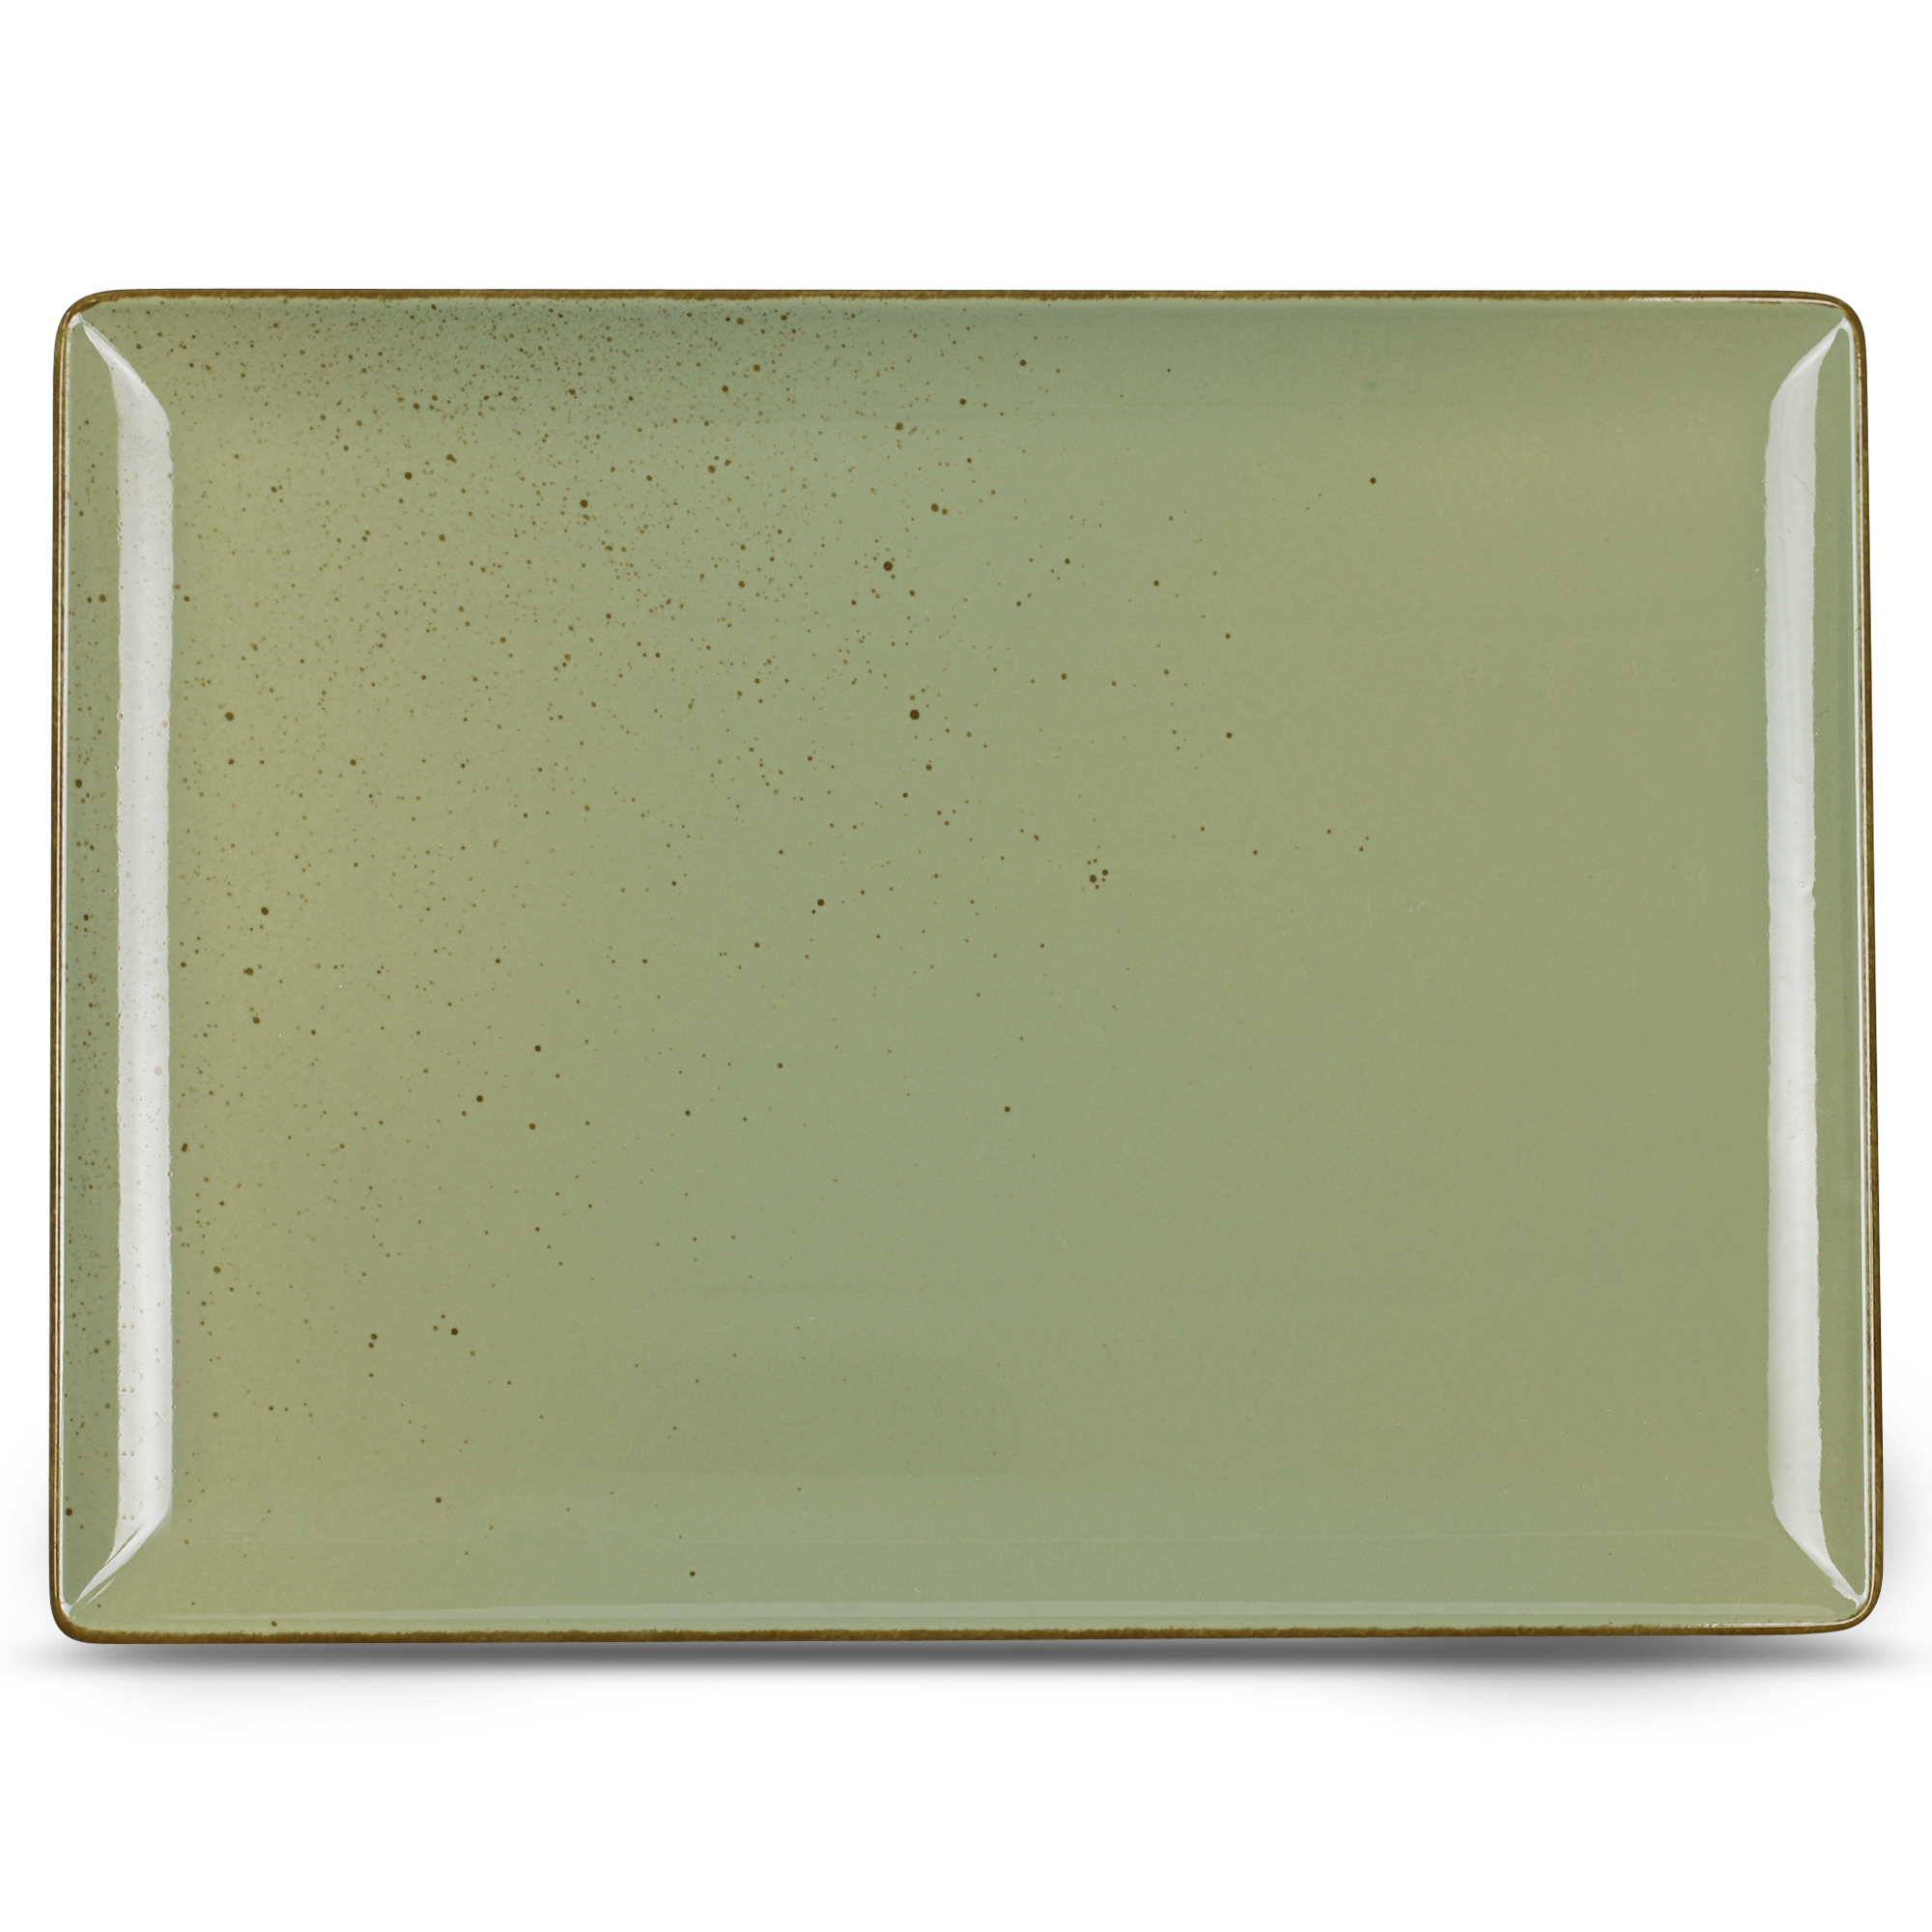 Platte eckig 35,5x26,5cm SMART olive smash